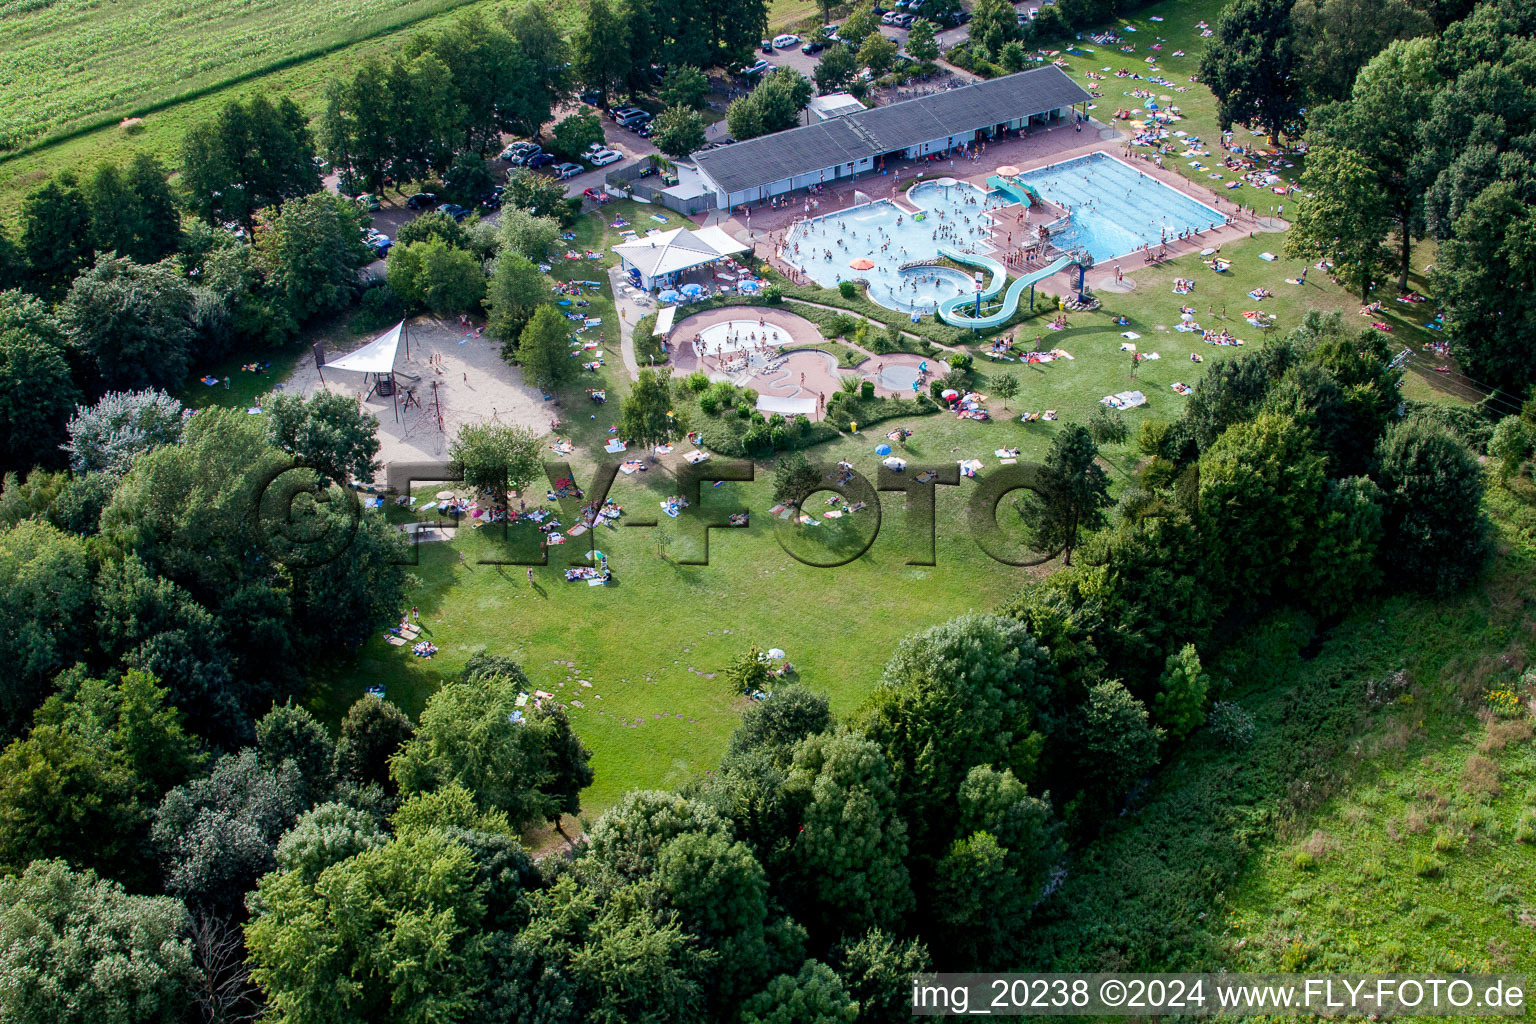 Luftbild von Kurven und Kreis- Bahnen der Wasser- Rutsche am Schwimmbecken des Freibades Waldschwimmbad Kandel in Kandel im Bundesland Rheinland-Pfalz, Deutschland